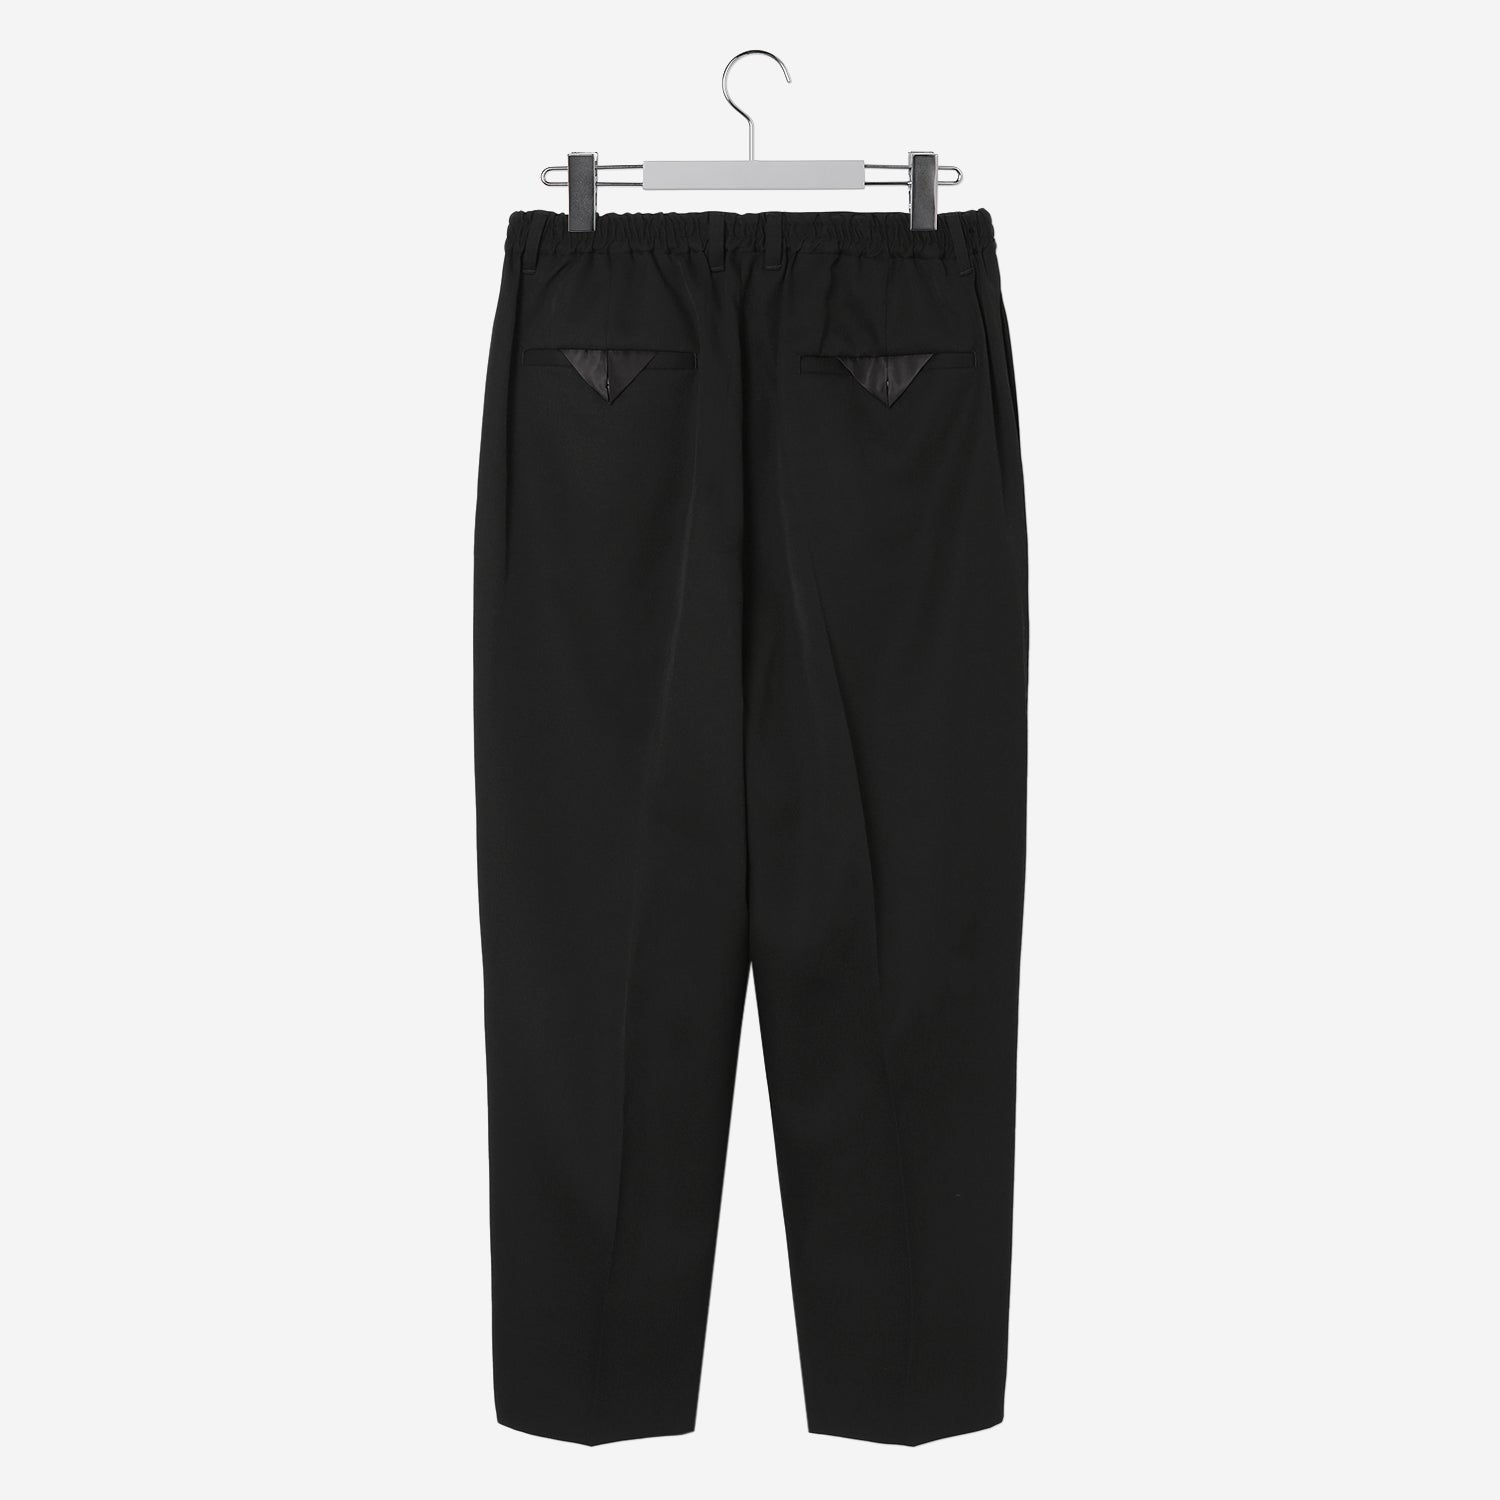 LAIB / Sarrouel Pants / black